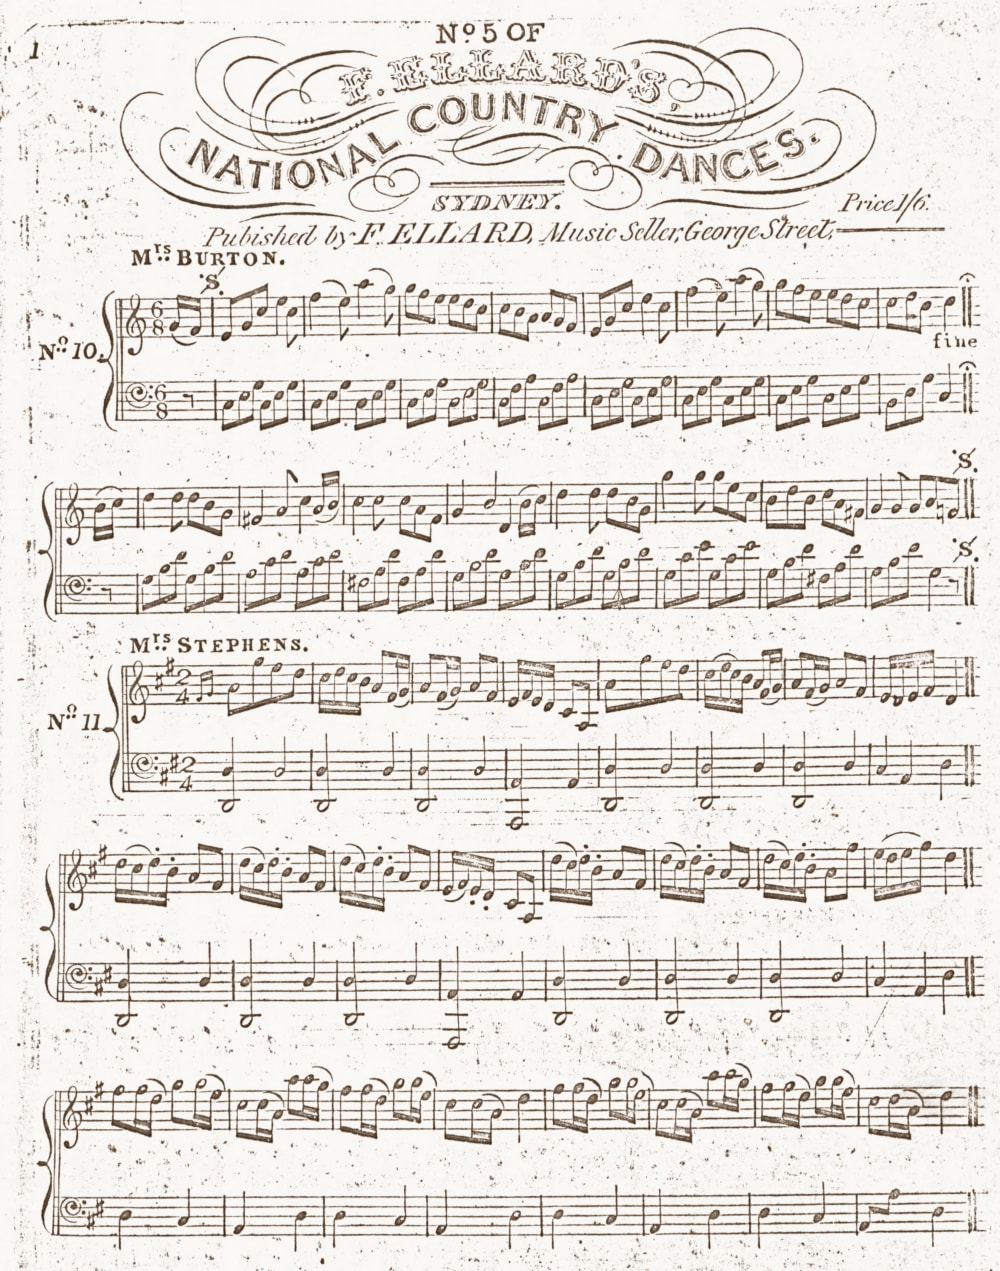 No. 11. Mrs. Stephens [sic], in No. 5 of F. Ellard's national country dances (Sydney: F. Ellard, [1843])